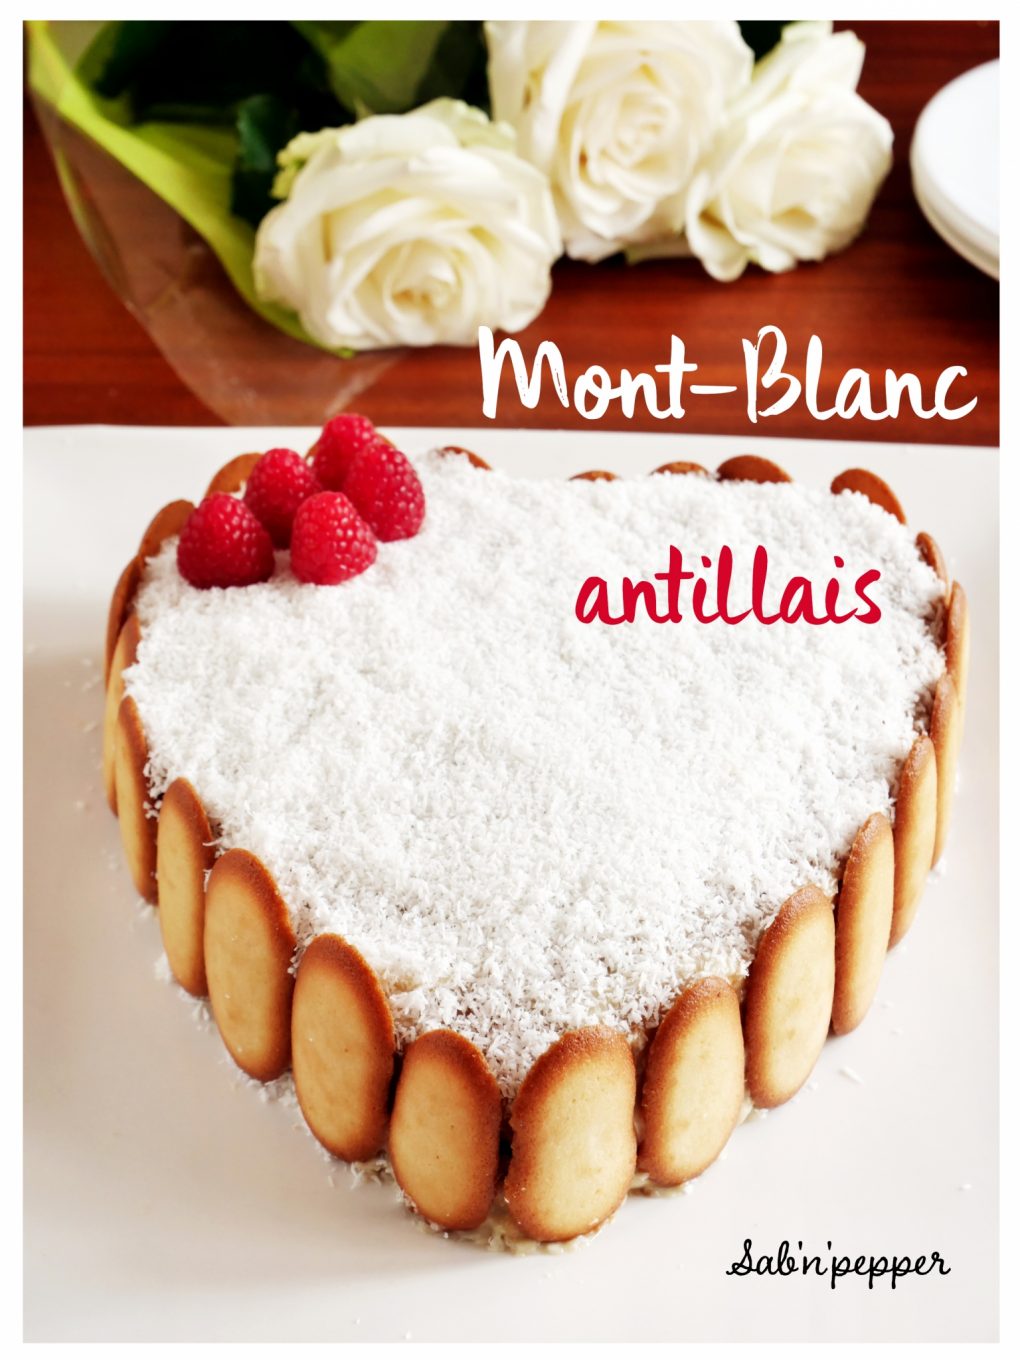 Un gâteau typique des Antilles : le mont blanc